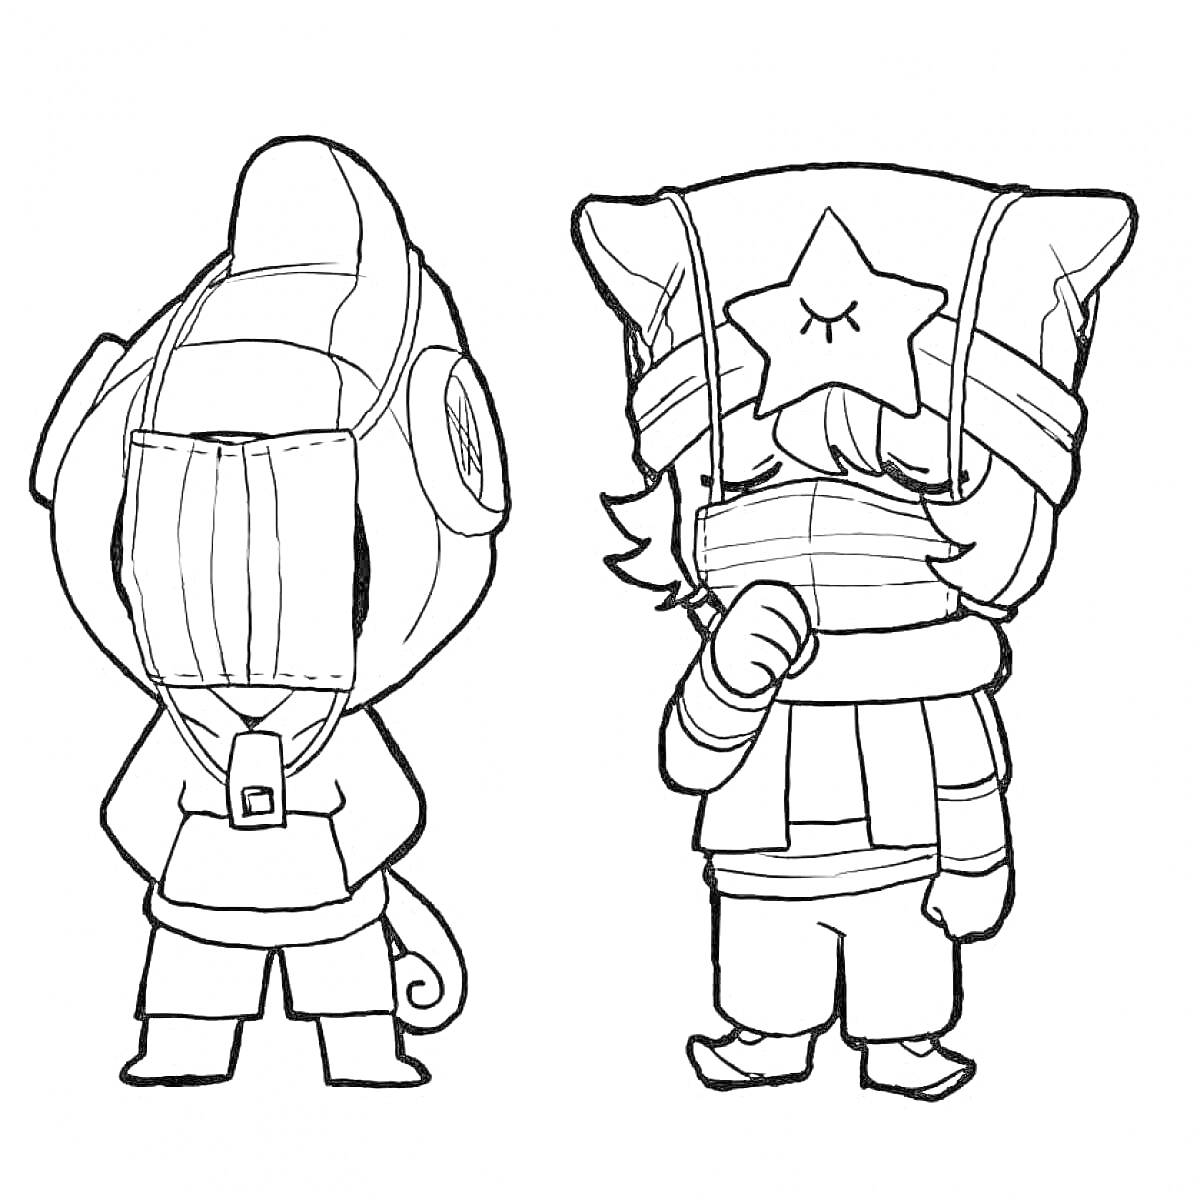 Раскраска Два персонажа Леона из игры Brawl Stars, один из которых одет в костюм ящерицы, а другой в костюм с звездой на шапке